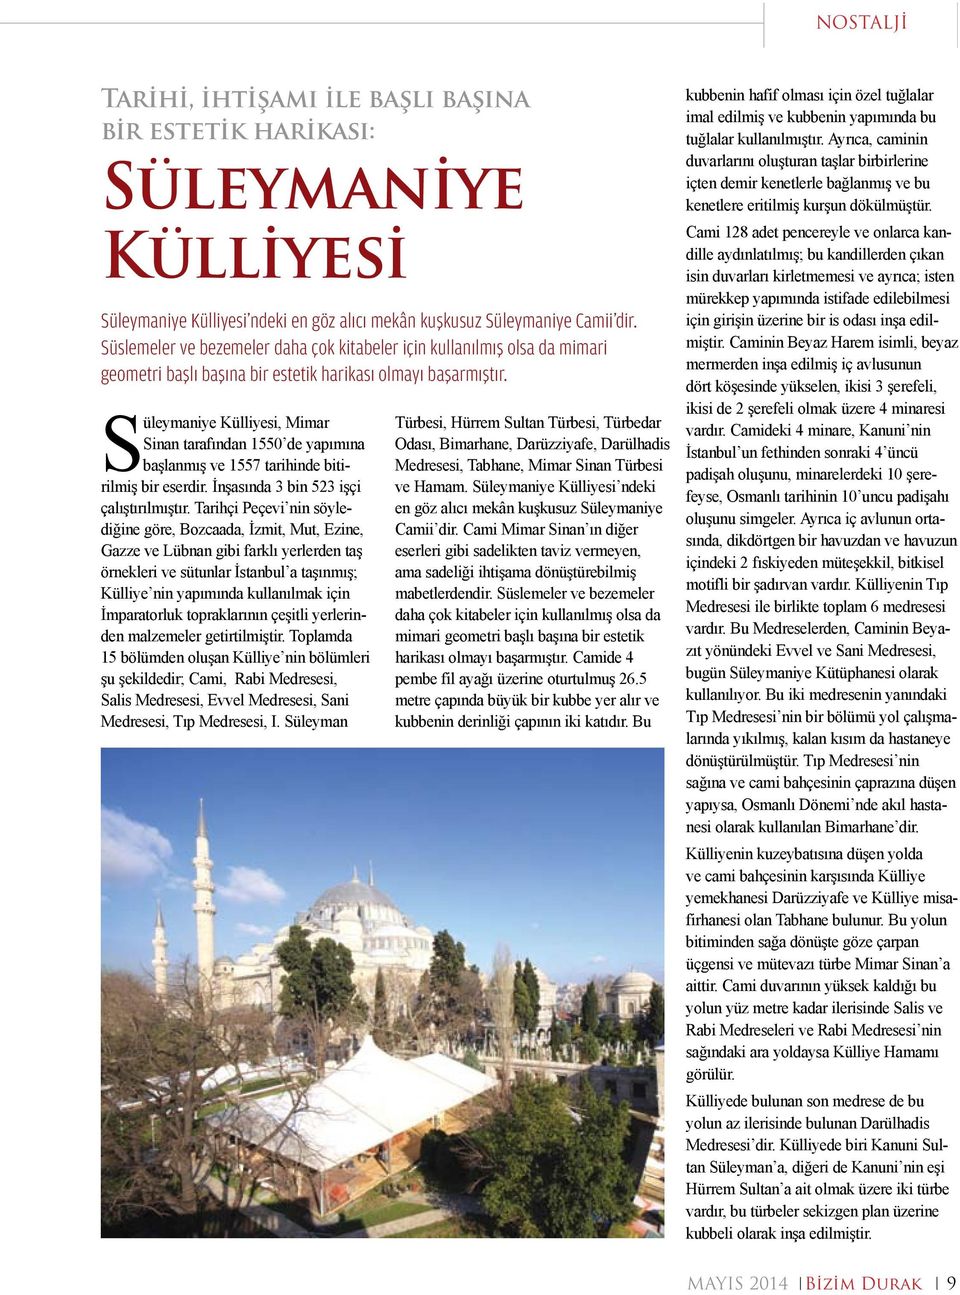 Süleymaniye Külliyesi, Mimar Sinan tarafından 1550 de yapımına başlanmış ve 1557 tarihinde bitirilmiş bir eserdir. İnşasında 3 bin 523 işçi çalıştırılmıştır.